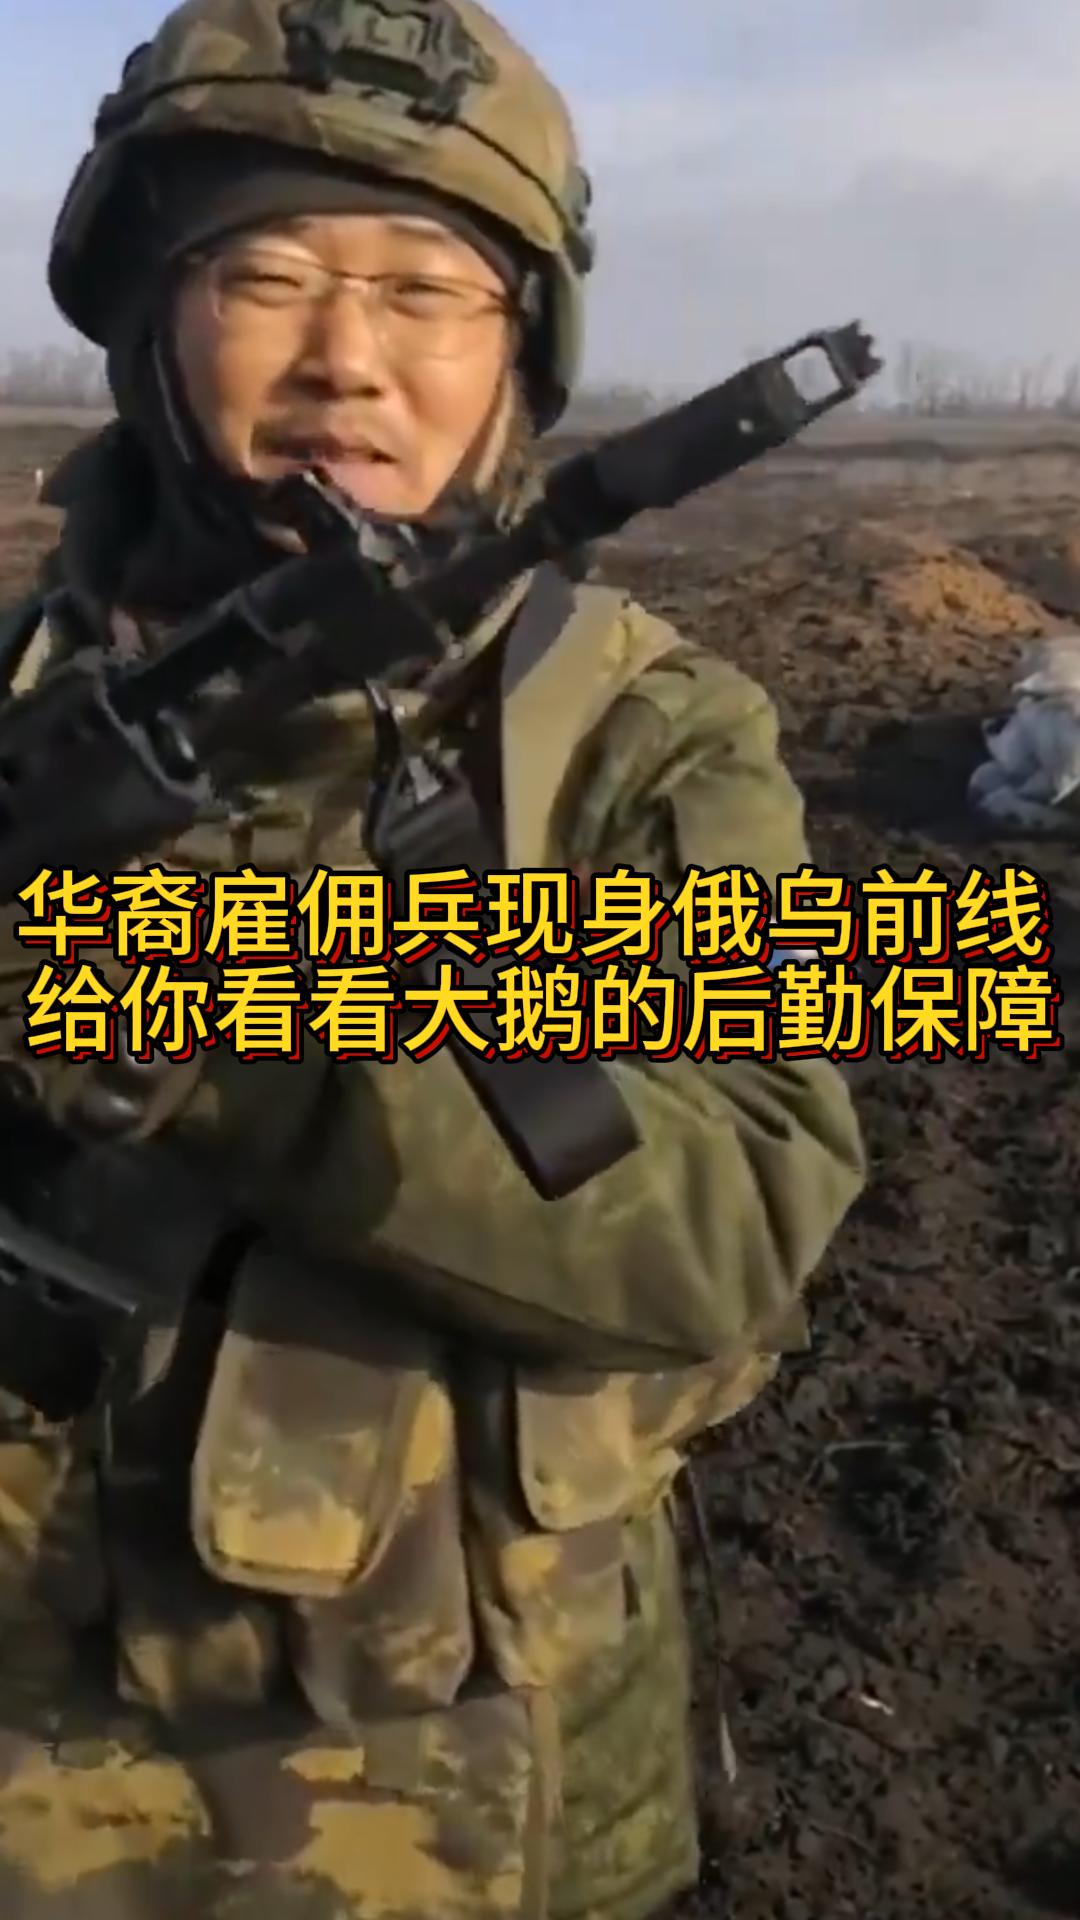 华裔雇佣兵河南李建伟现身俄乌前线 给你看看大鹅真实的后勤保障